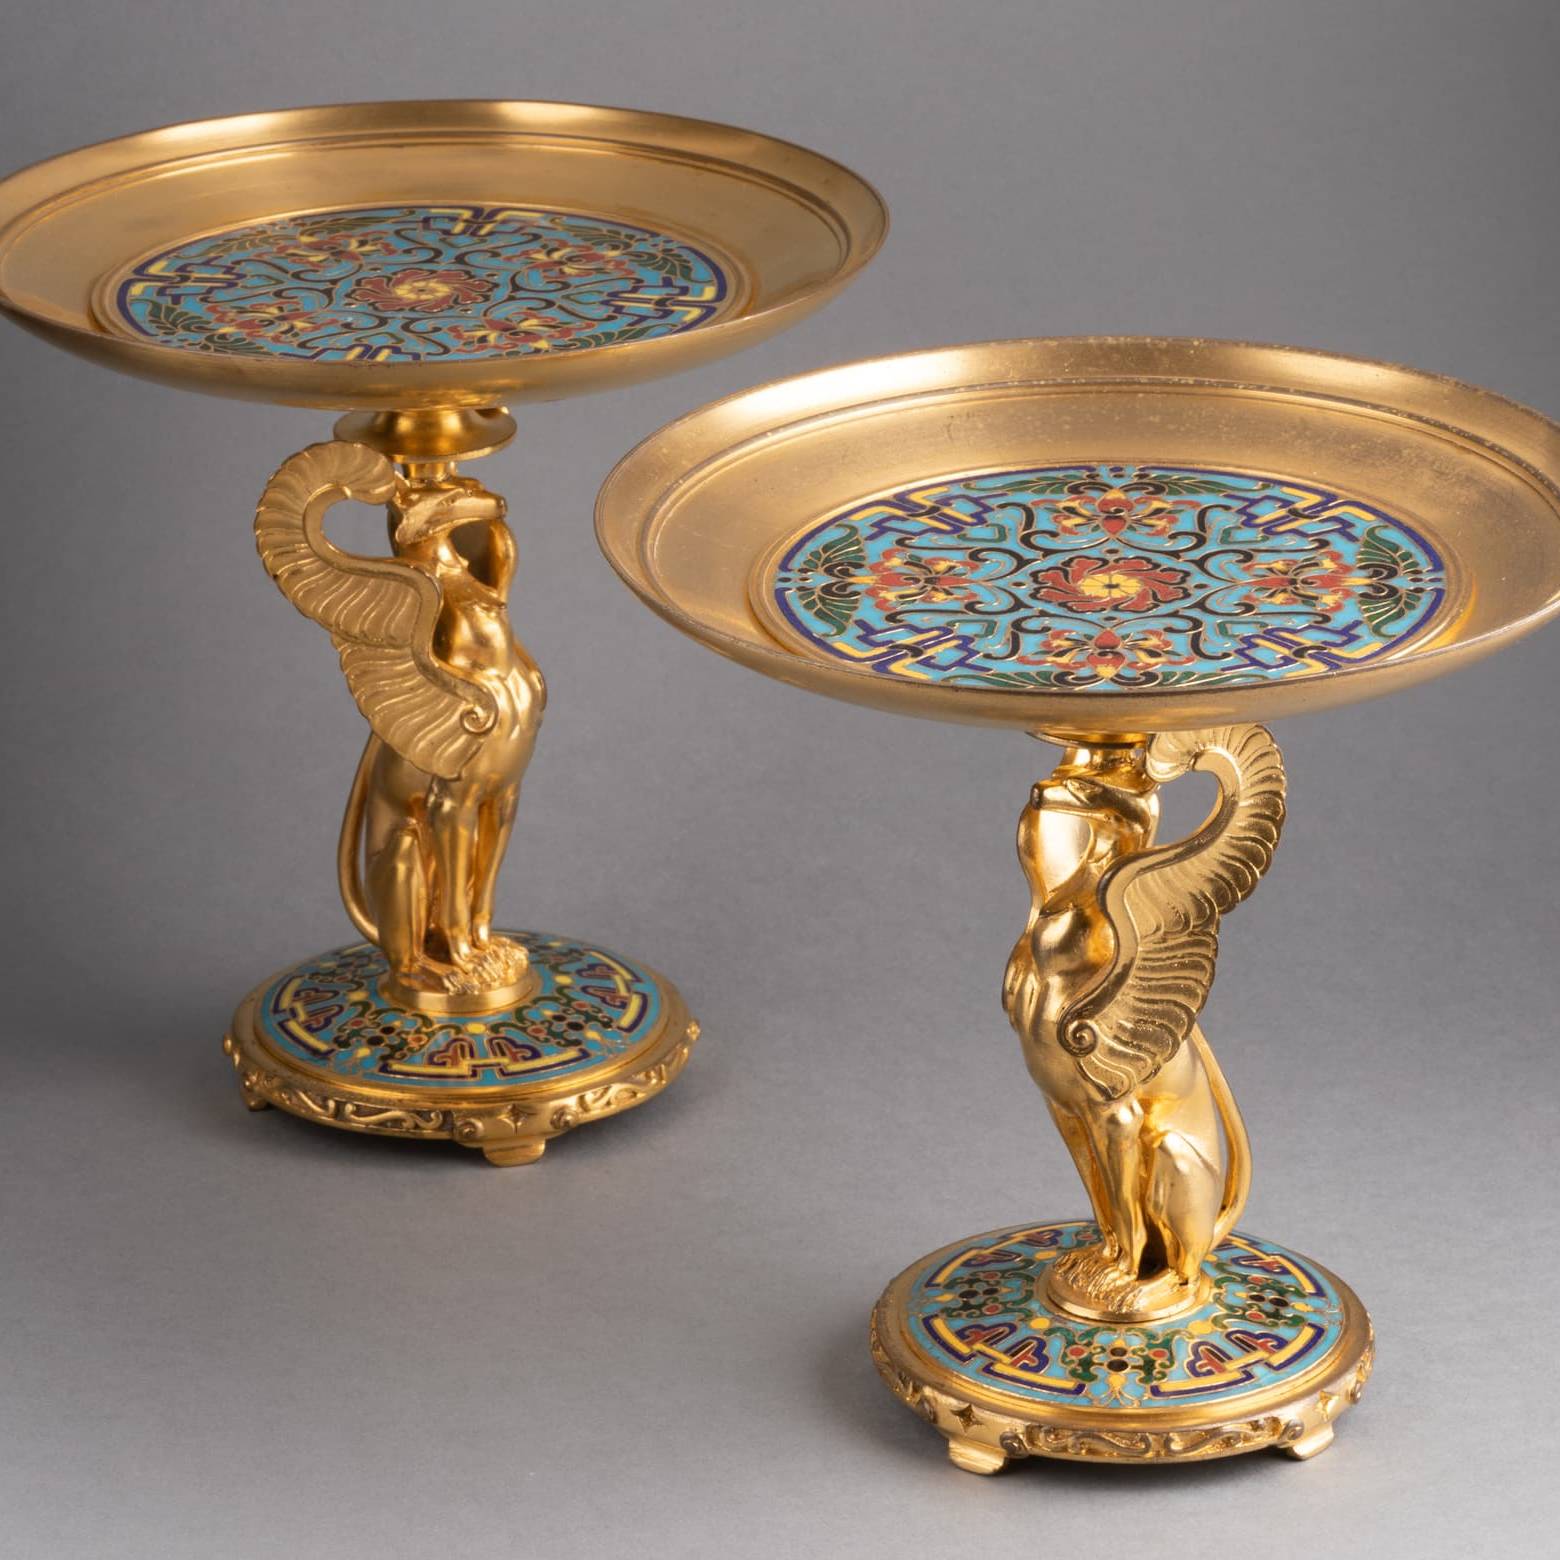 Paire de coupes en bronze doré et émaux. Barbedienne, XIXe siècle